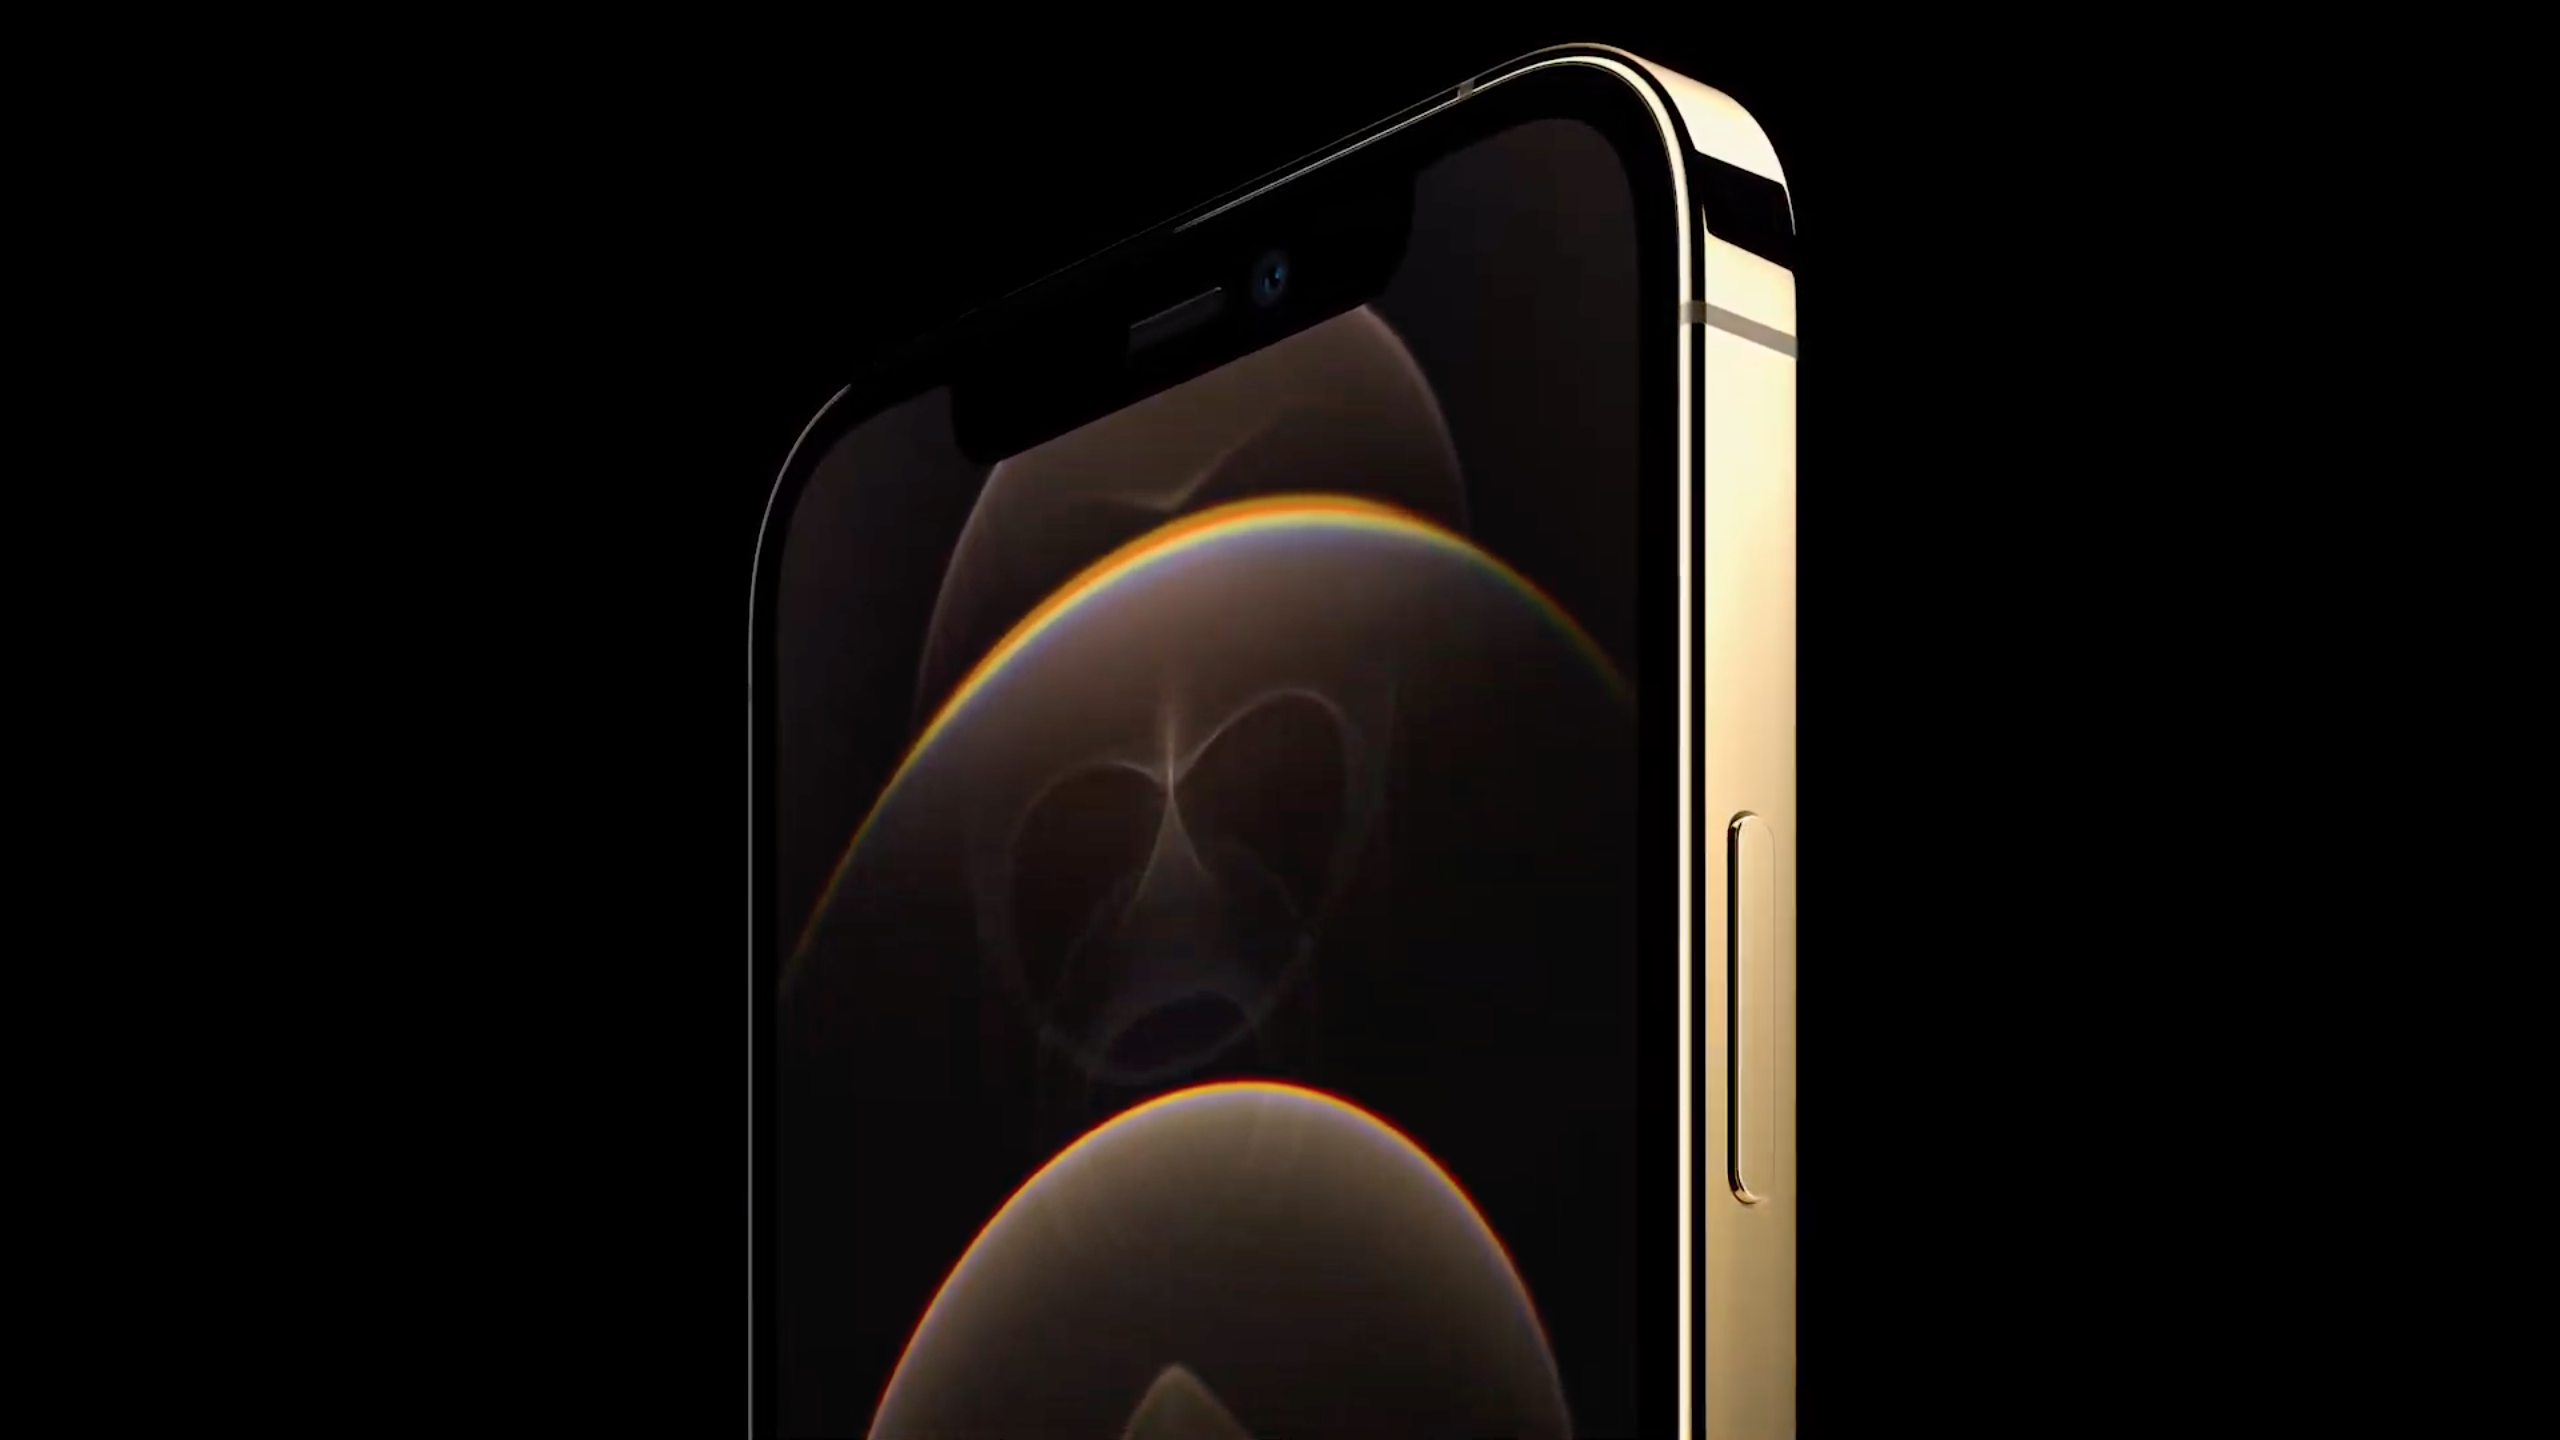 Chinh phục thế giới với iPhone 12 Pro Max - điện thoại hàng đầu của Apple về mọi mặt, từ camera đến hiệu suất.